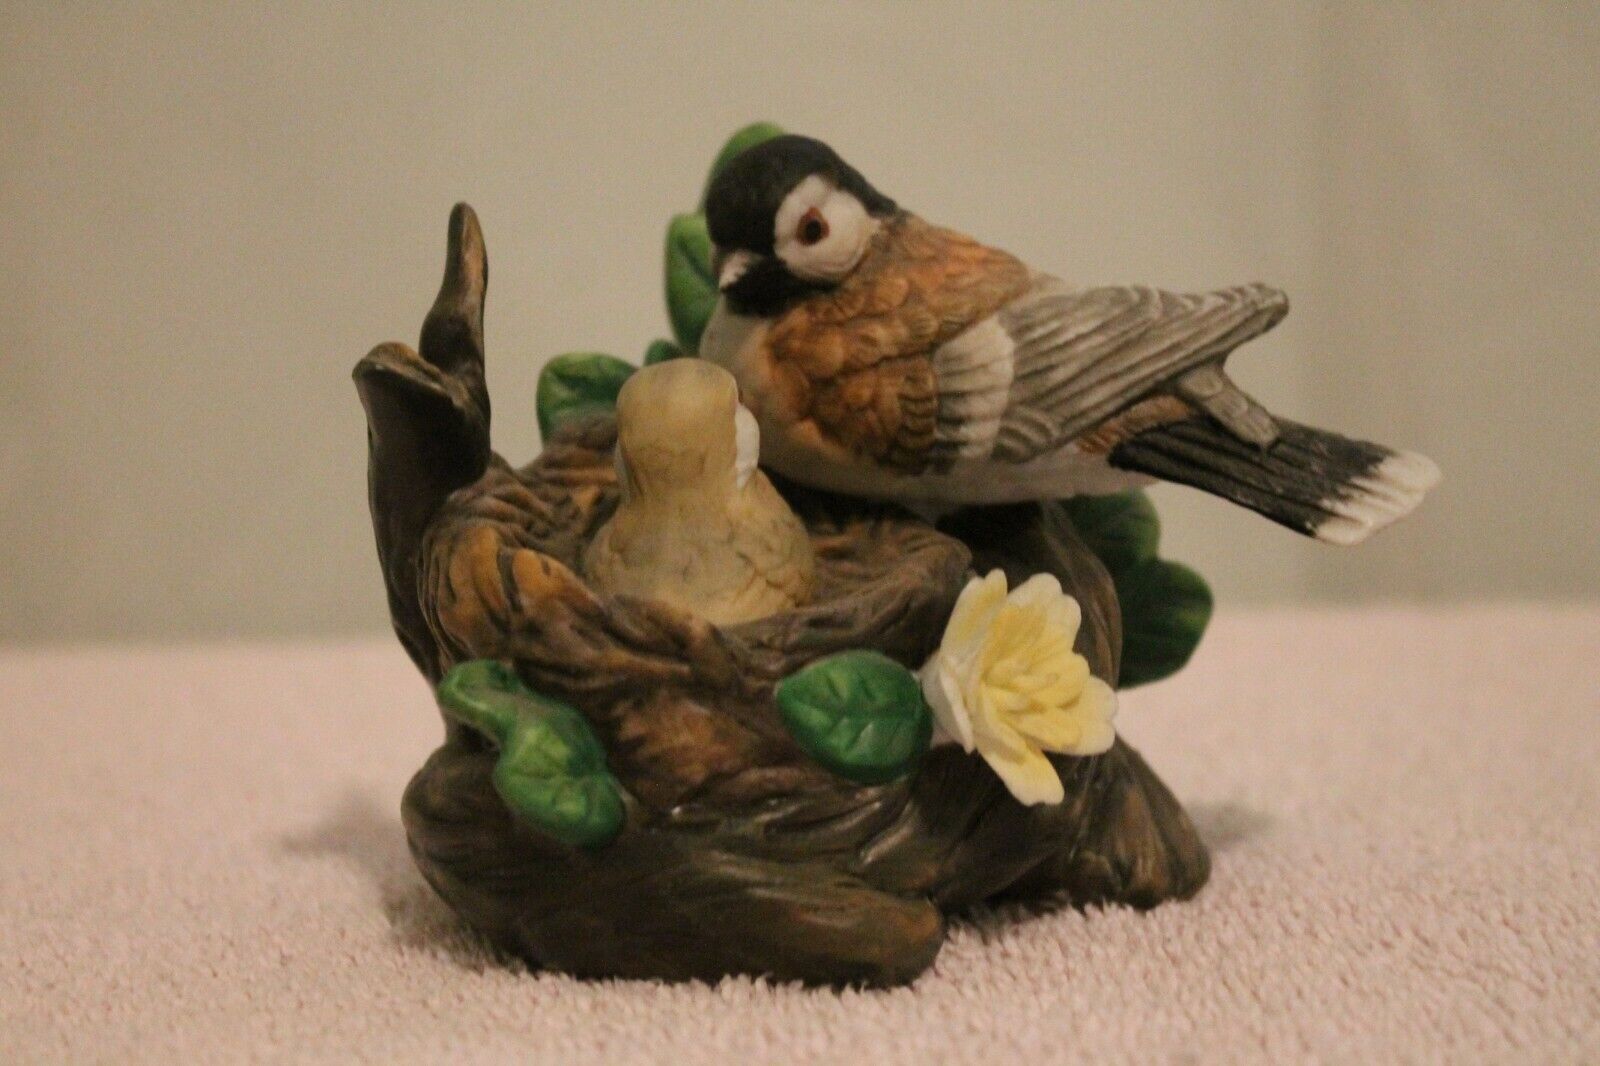 Ceramic Sparrow With Baby Figurine---3.25" H X 4.5" W X 3" D